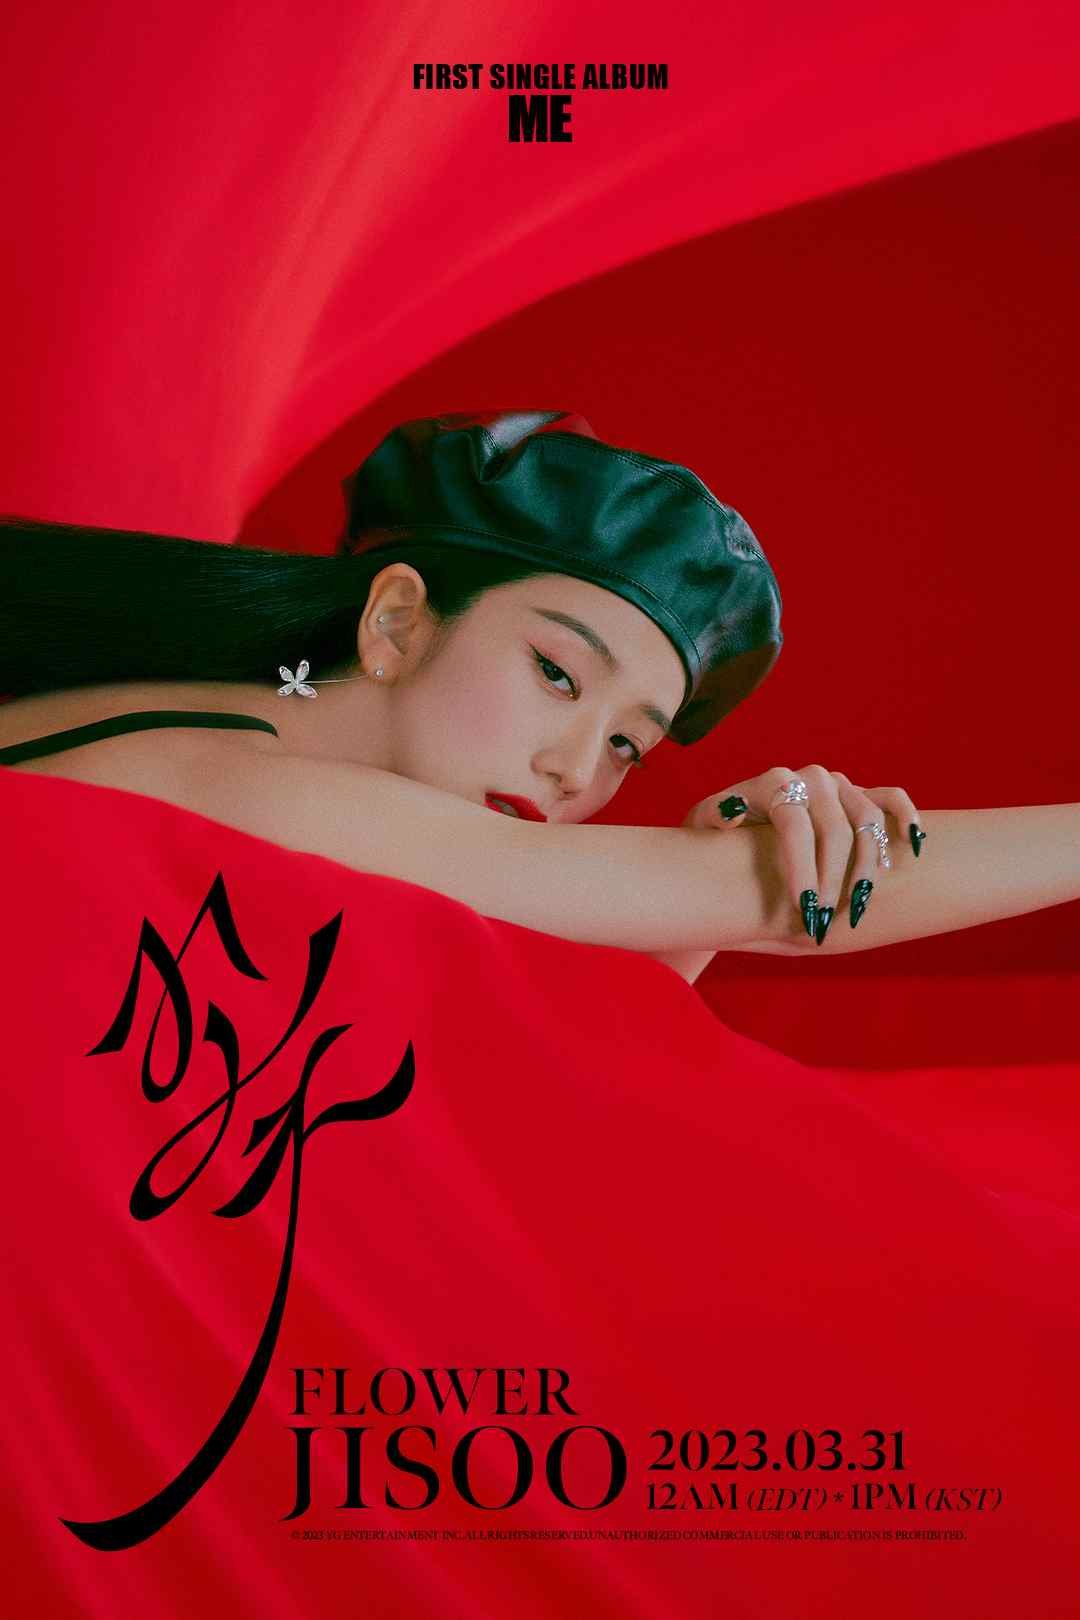 تكشف جيسو عن ملصق للاغنية الرئيسية من ألبومها القادم ME